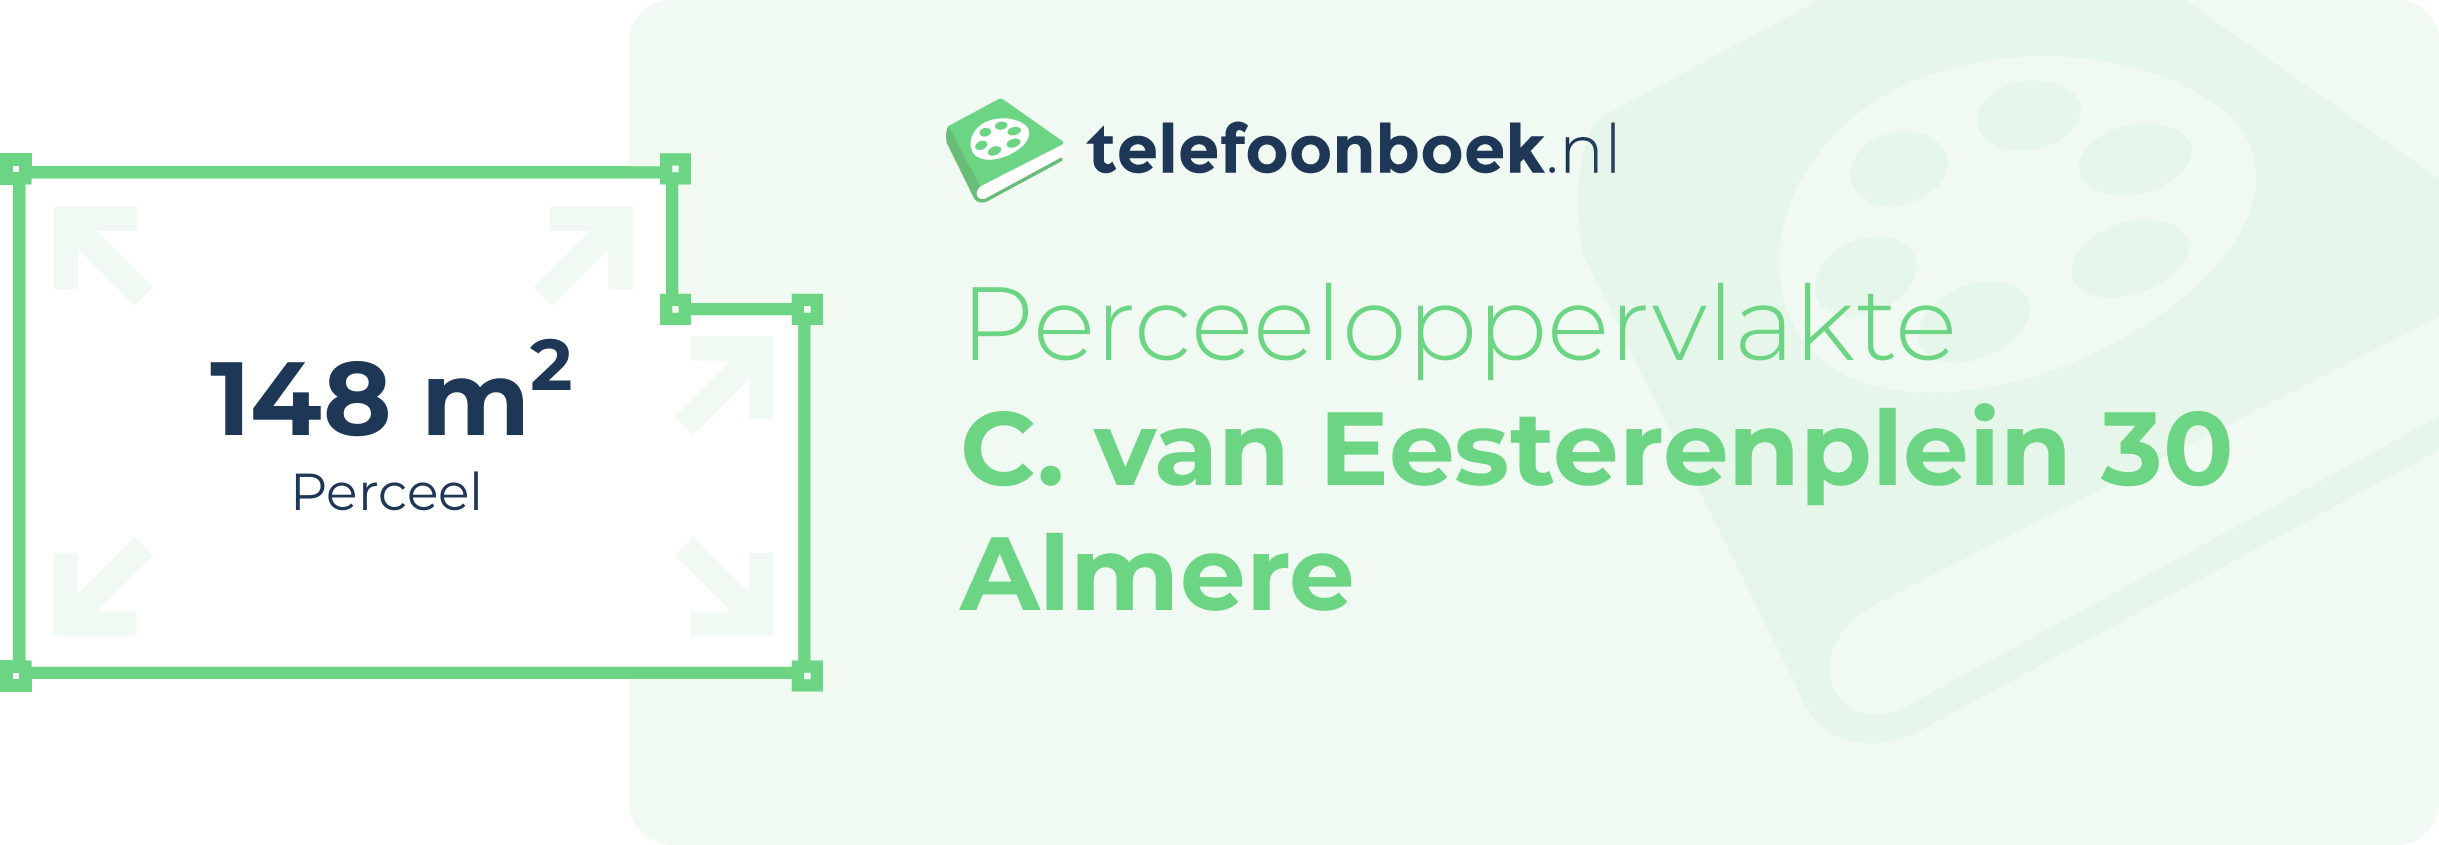 Perceeloppervlakte C. Van Eesterenplein 30 Almere